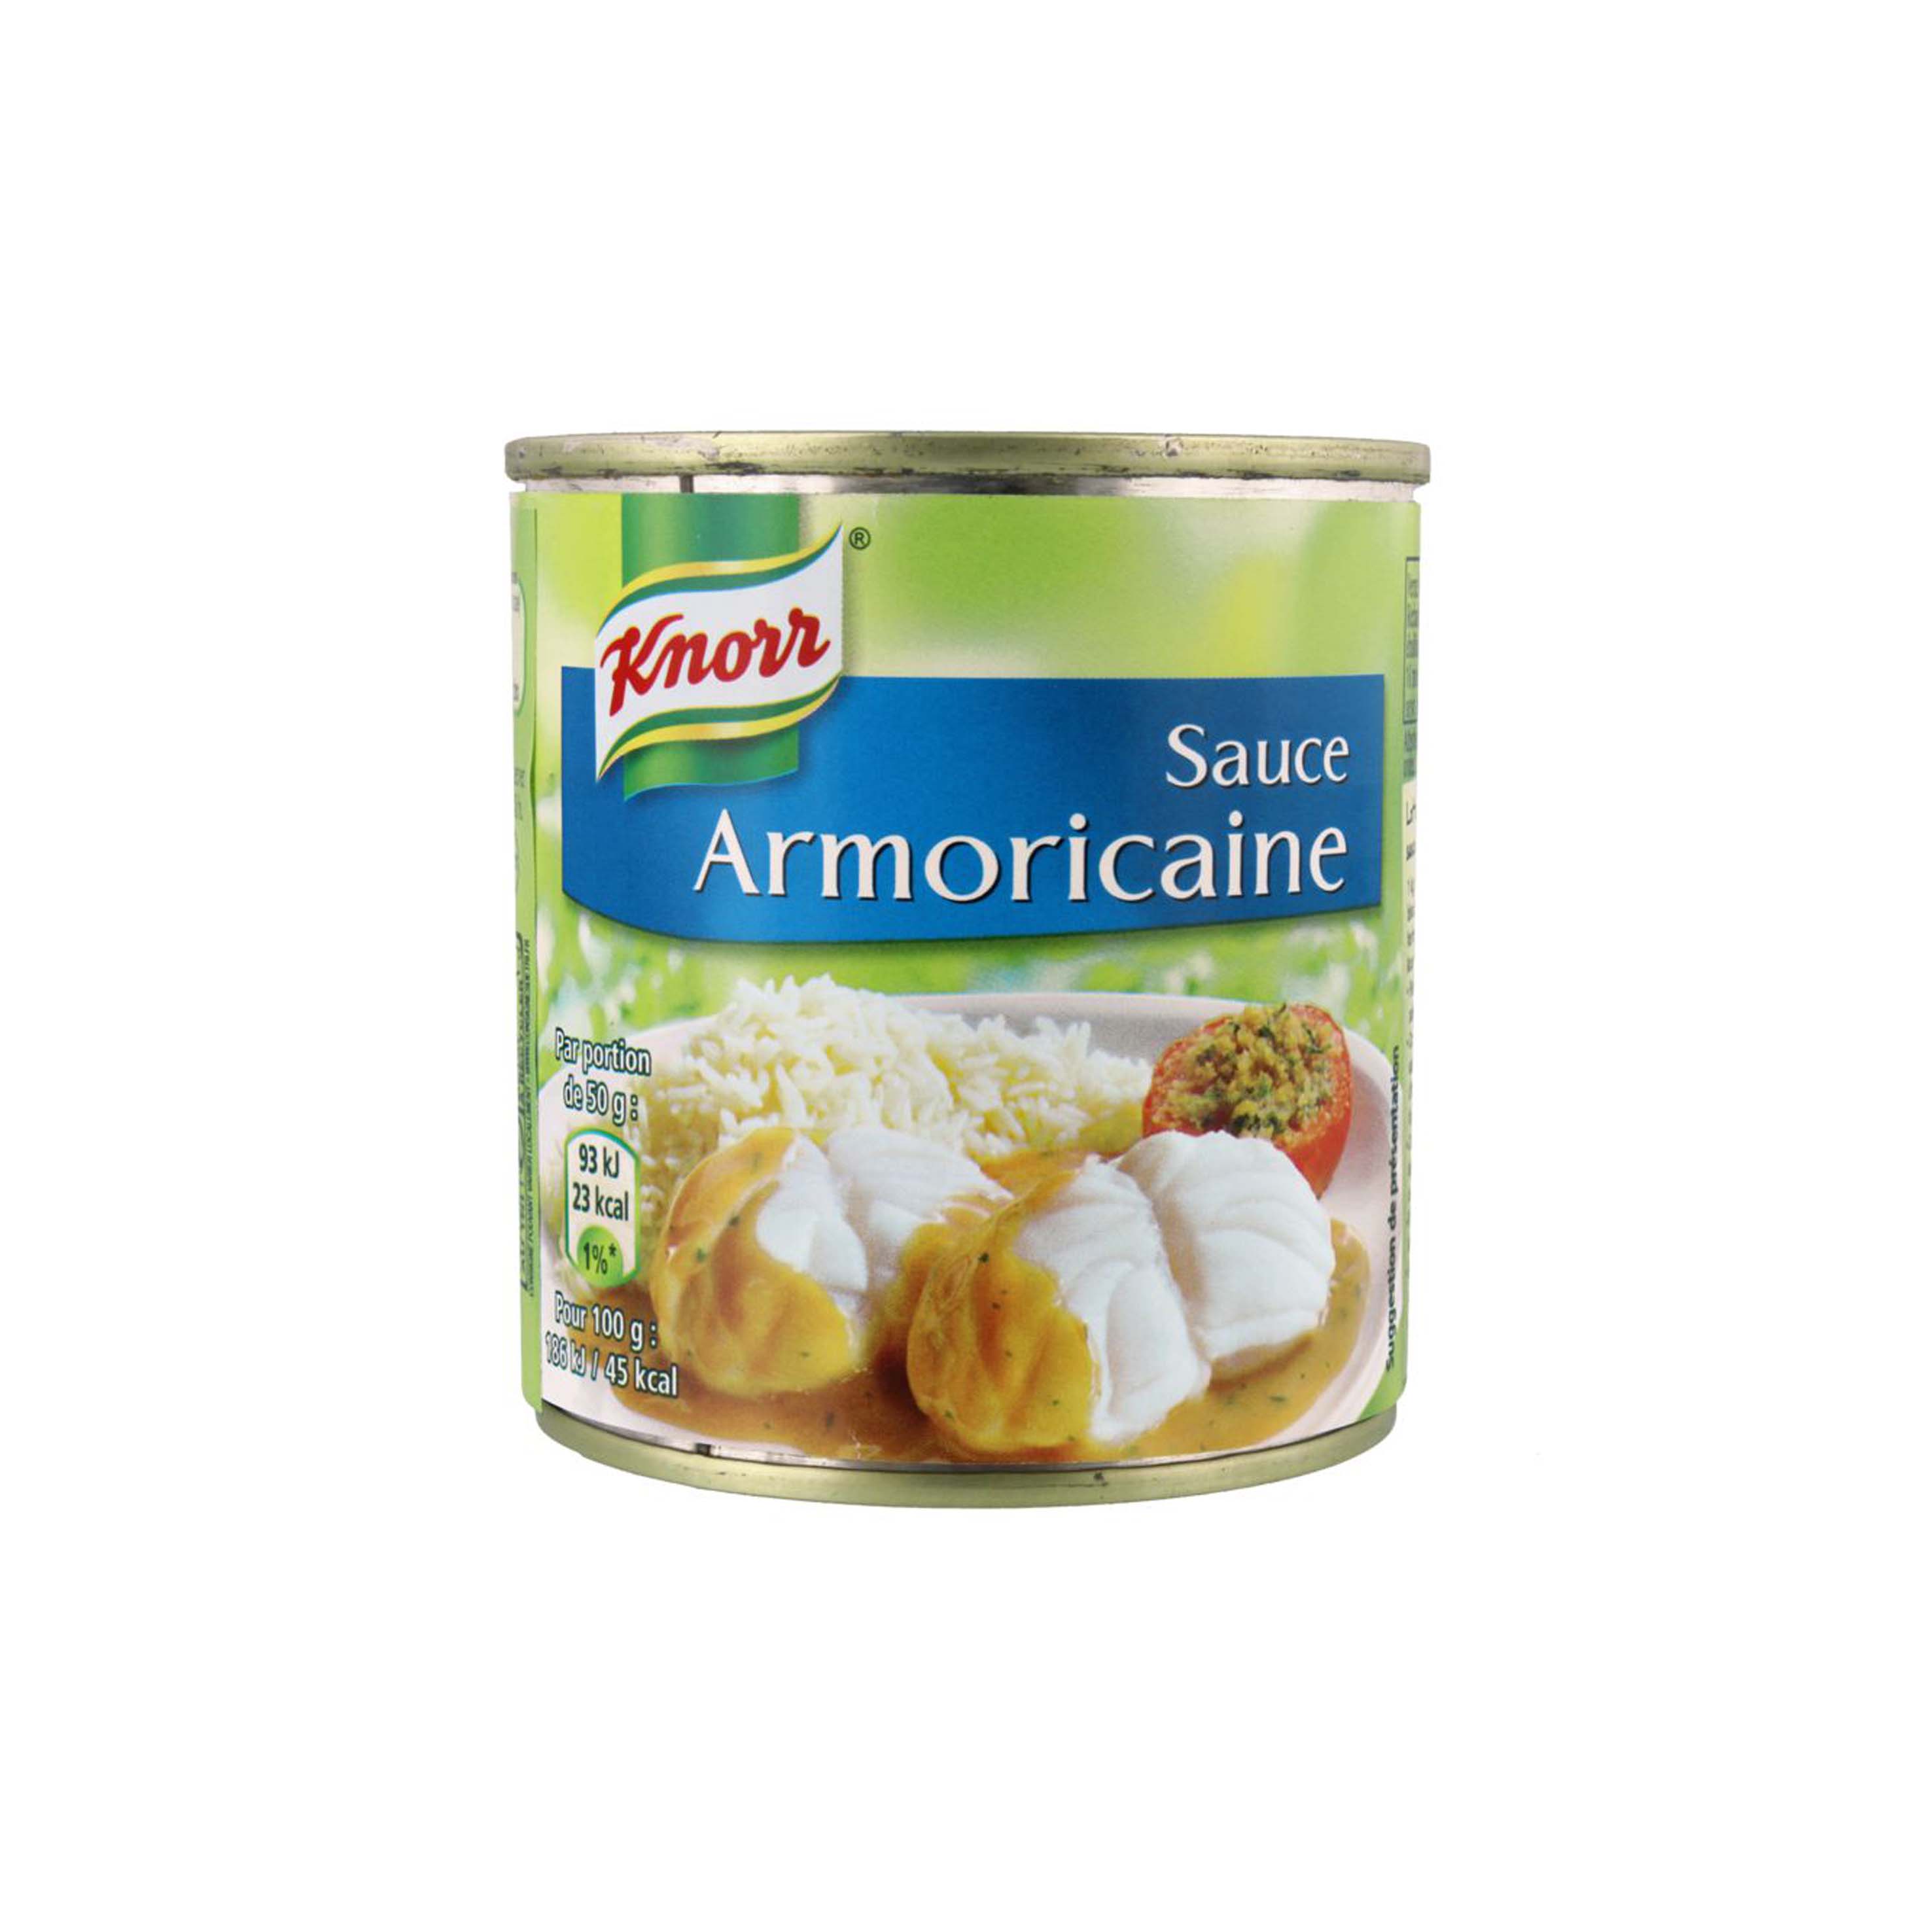 Knorr salsa armoricaine 200gr.